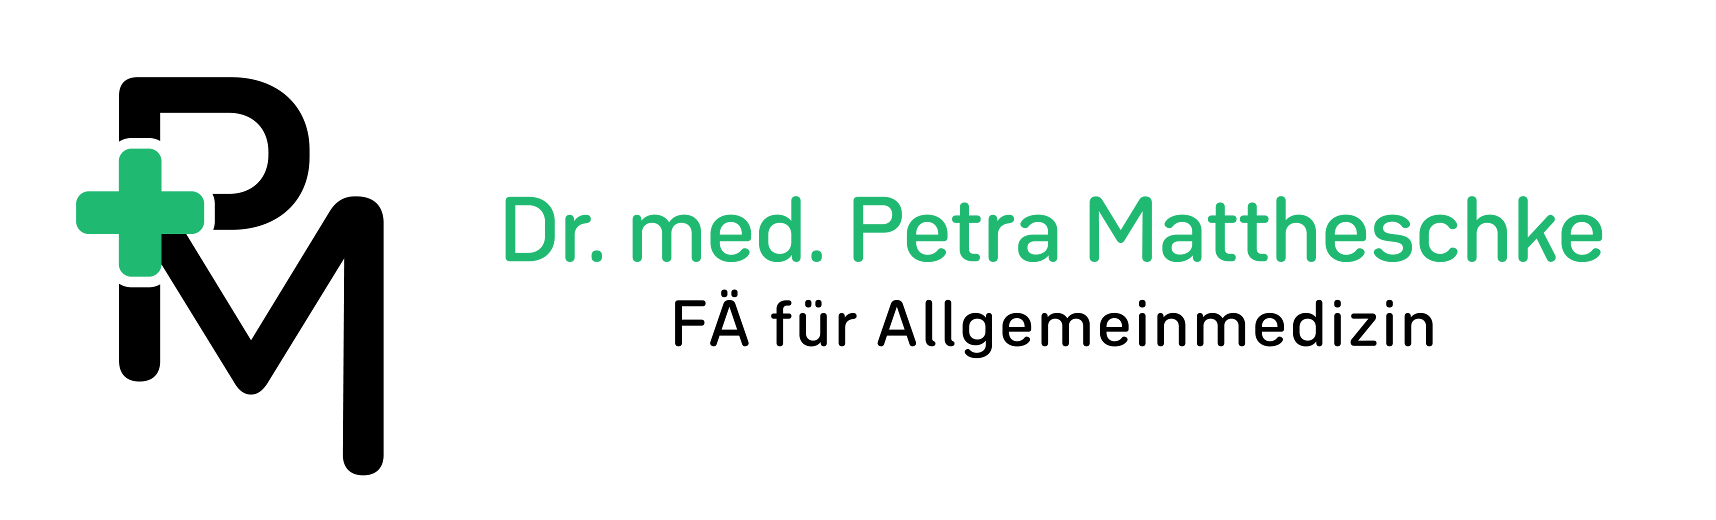 Dr. med. Petra Mattheschke